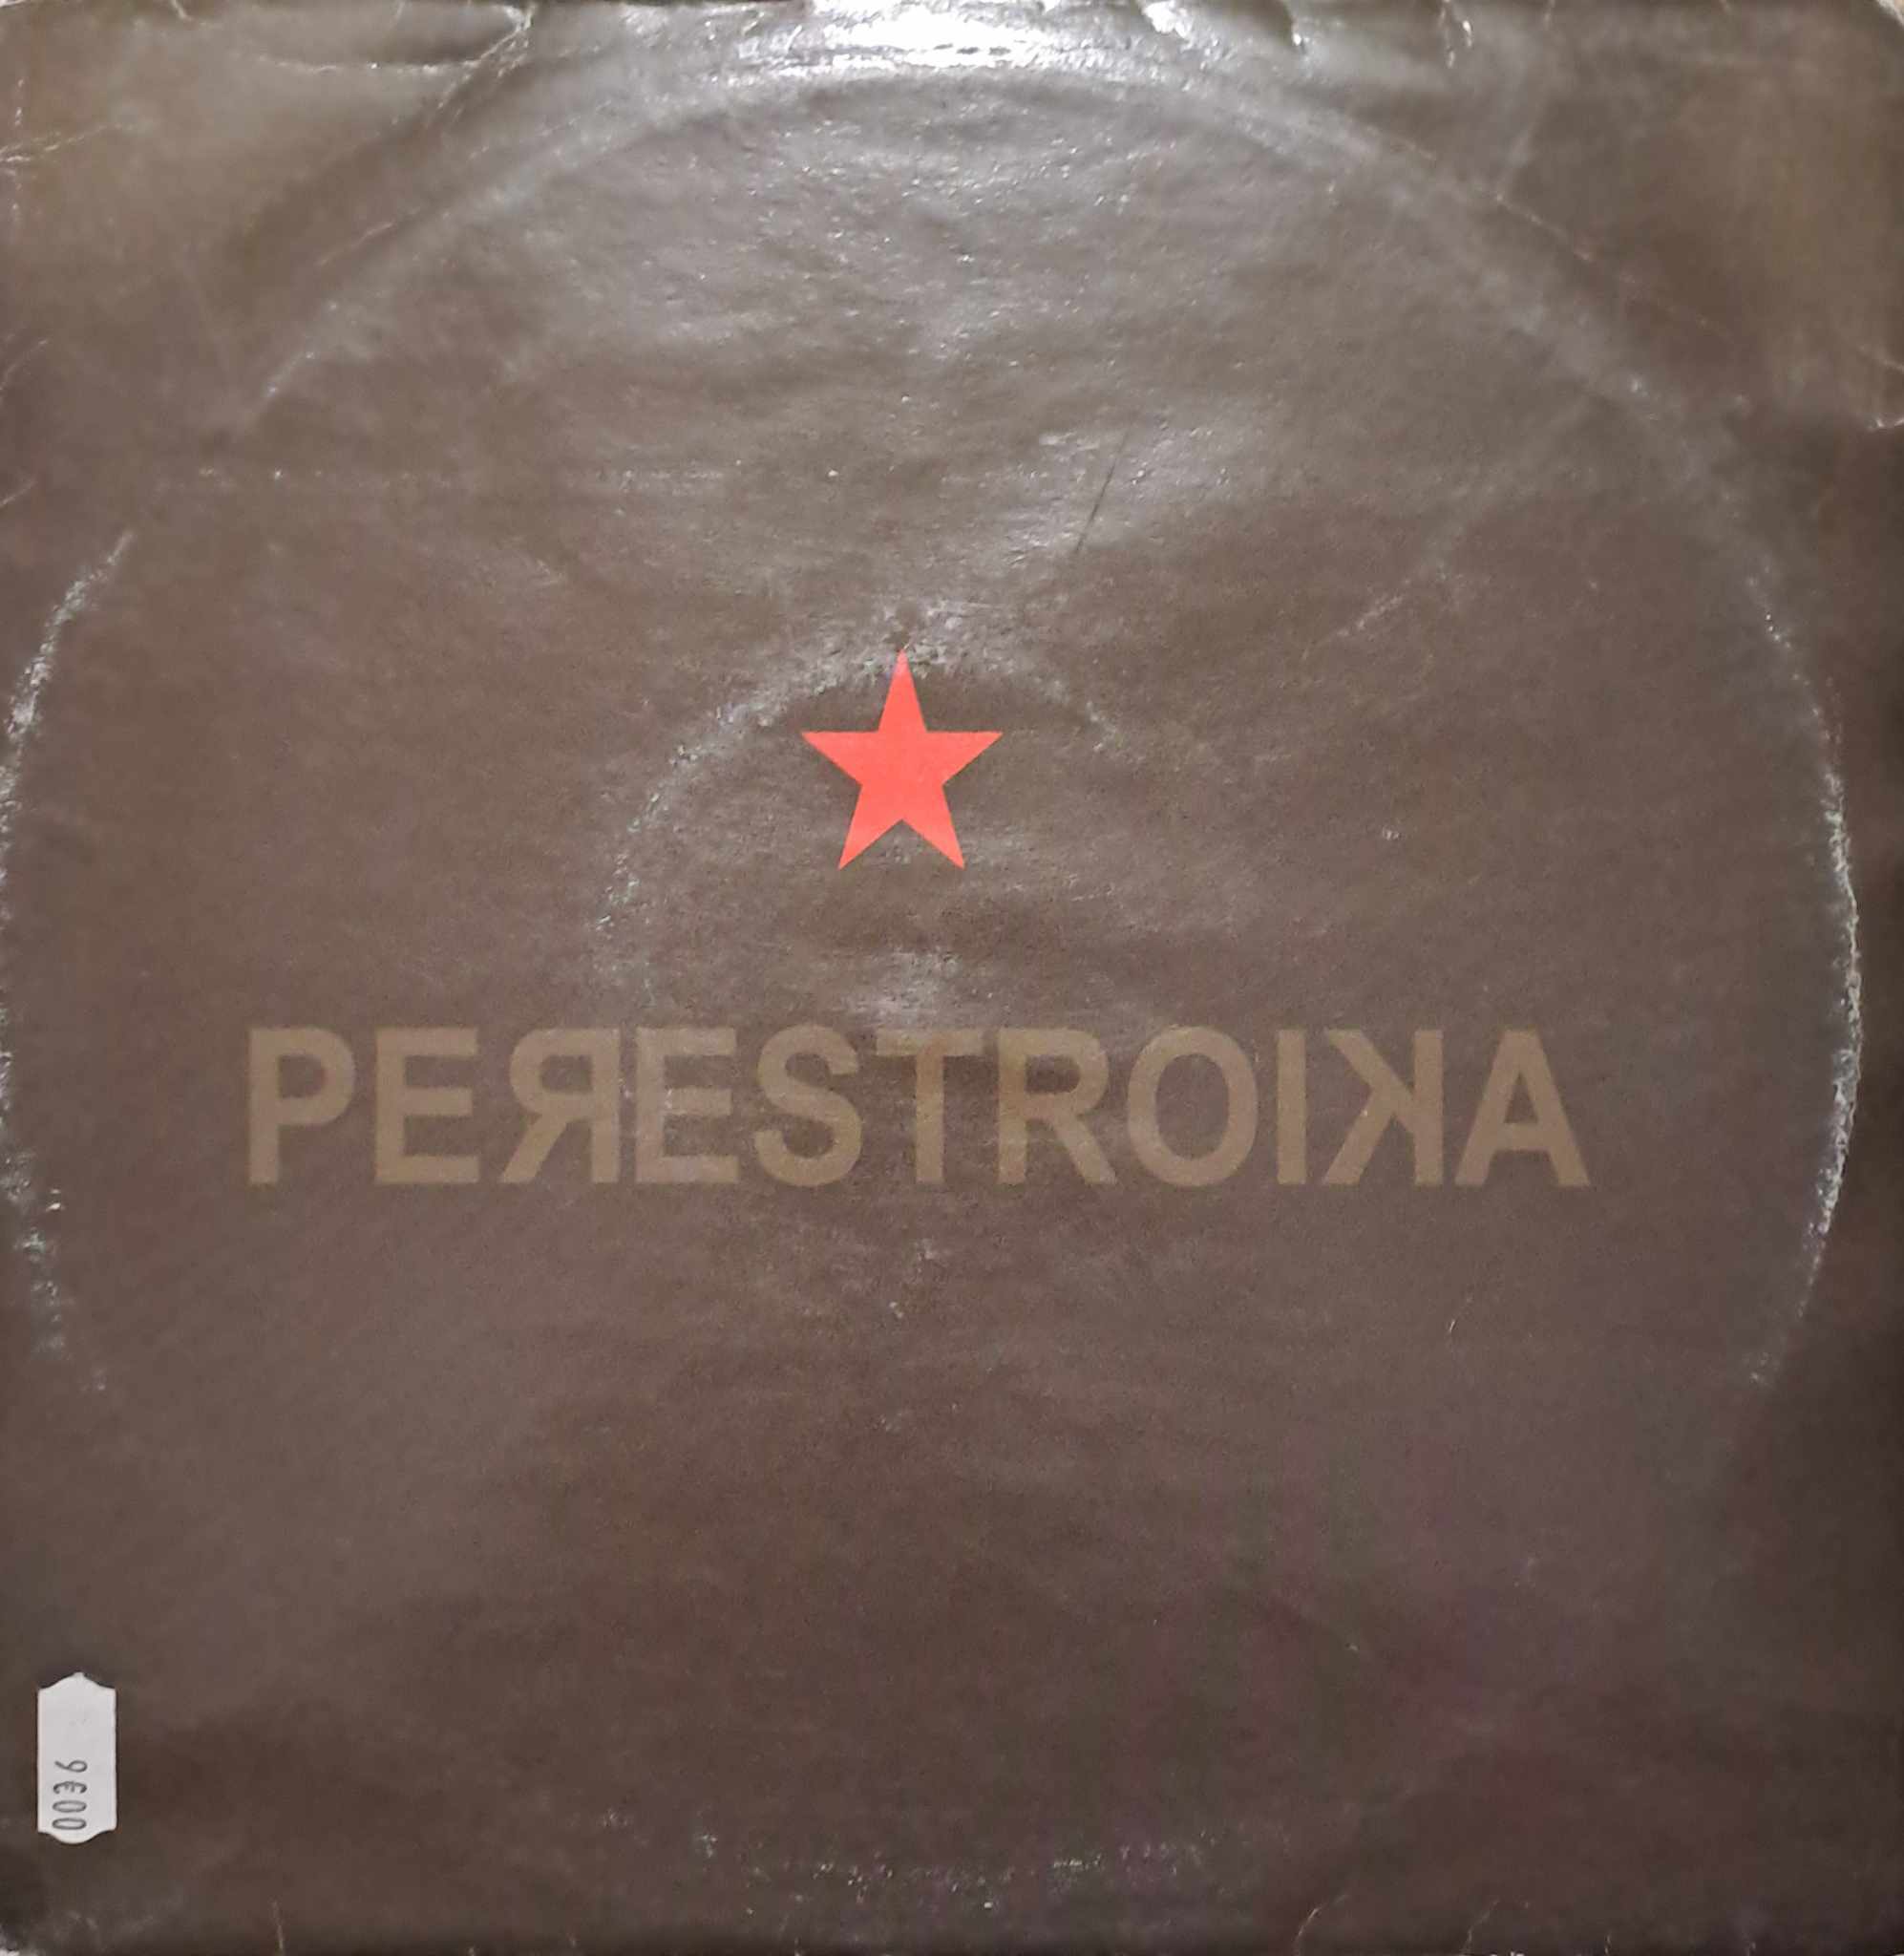 Perestroïka 04 - vinyle hardcore